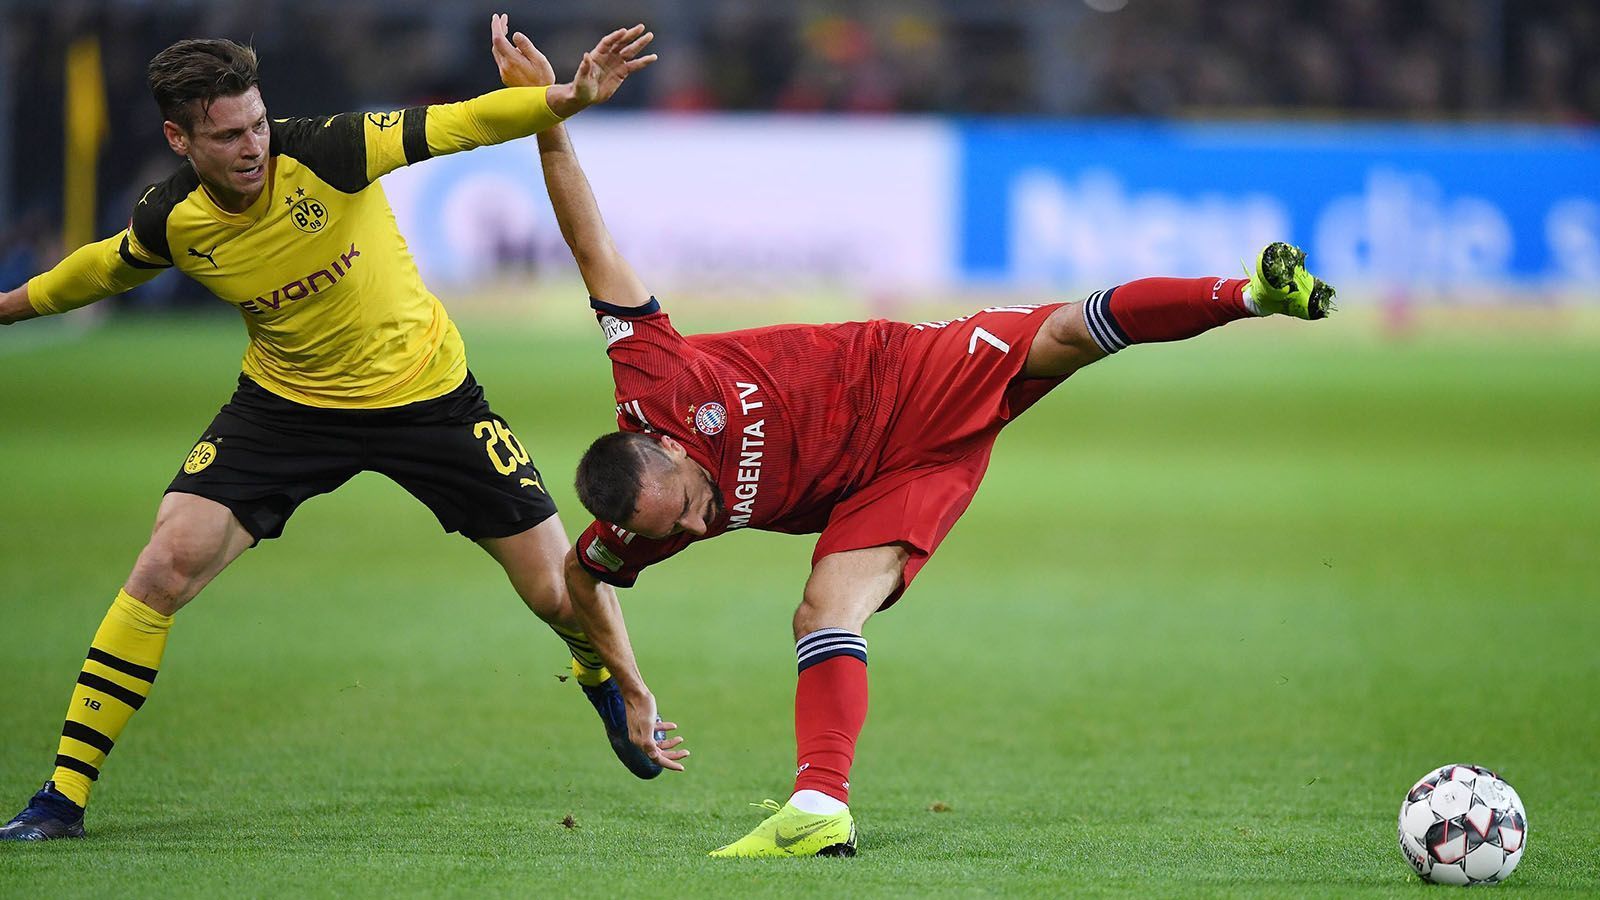 
                <strong>Saison 2018/2019</strong><br>
                Herbstmeister: Borussia Dortmund 42 Punkte Deutscher Meister: Bayern München 78 Punkte
              